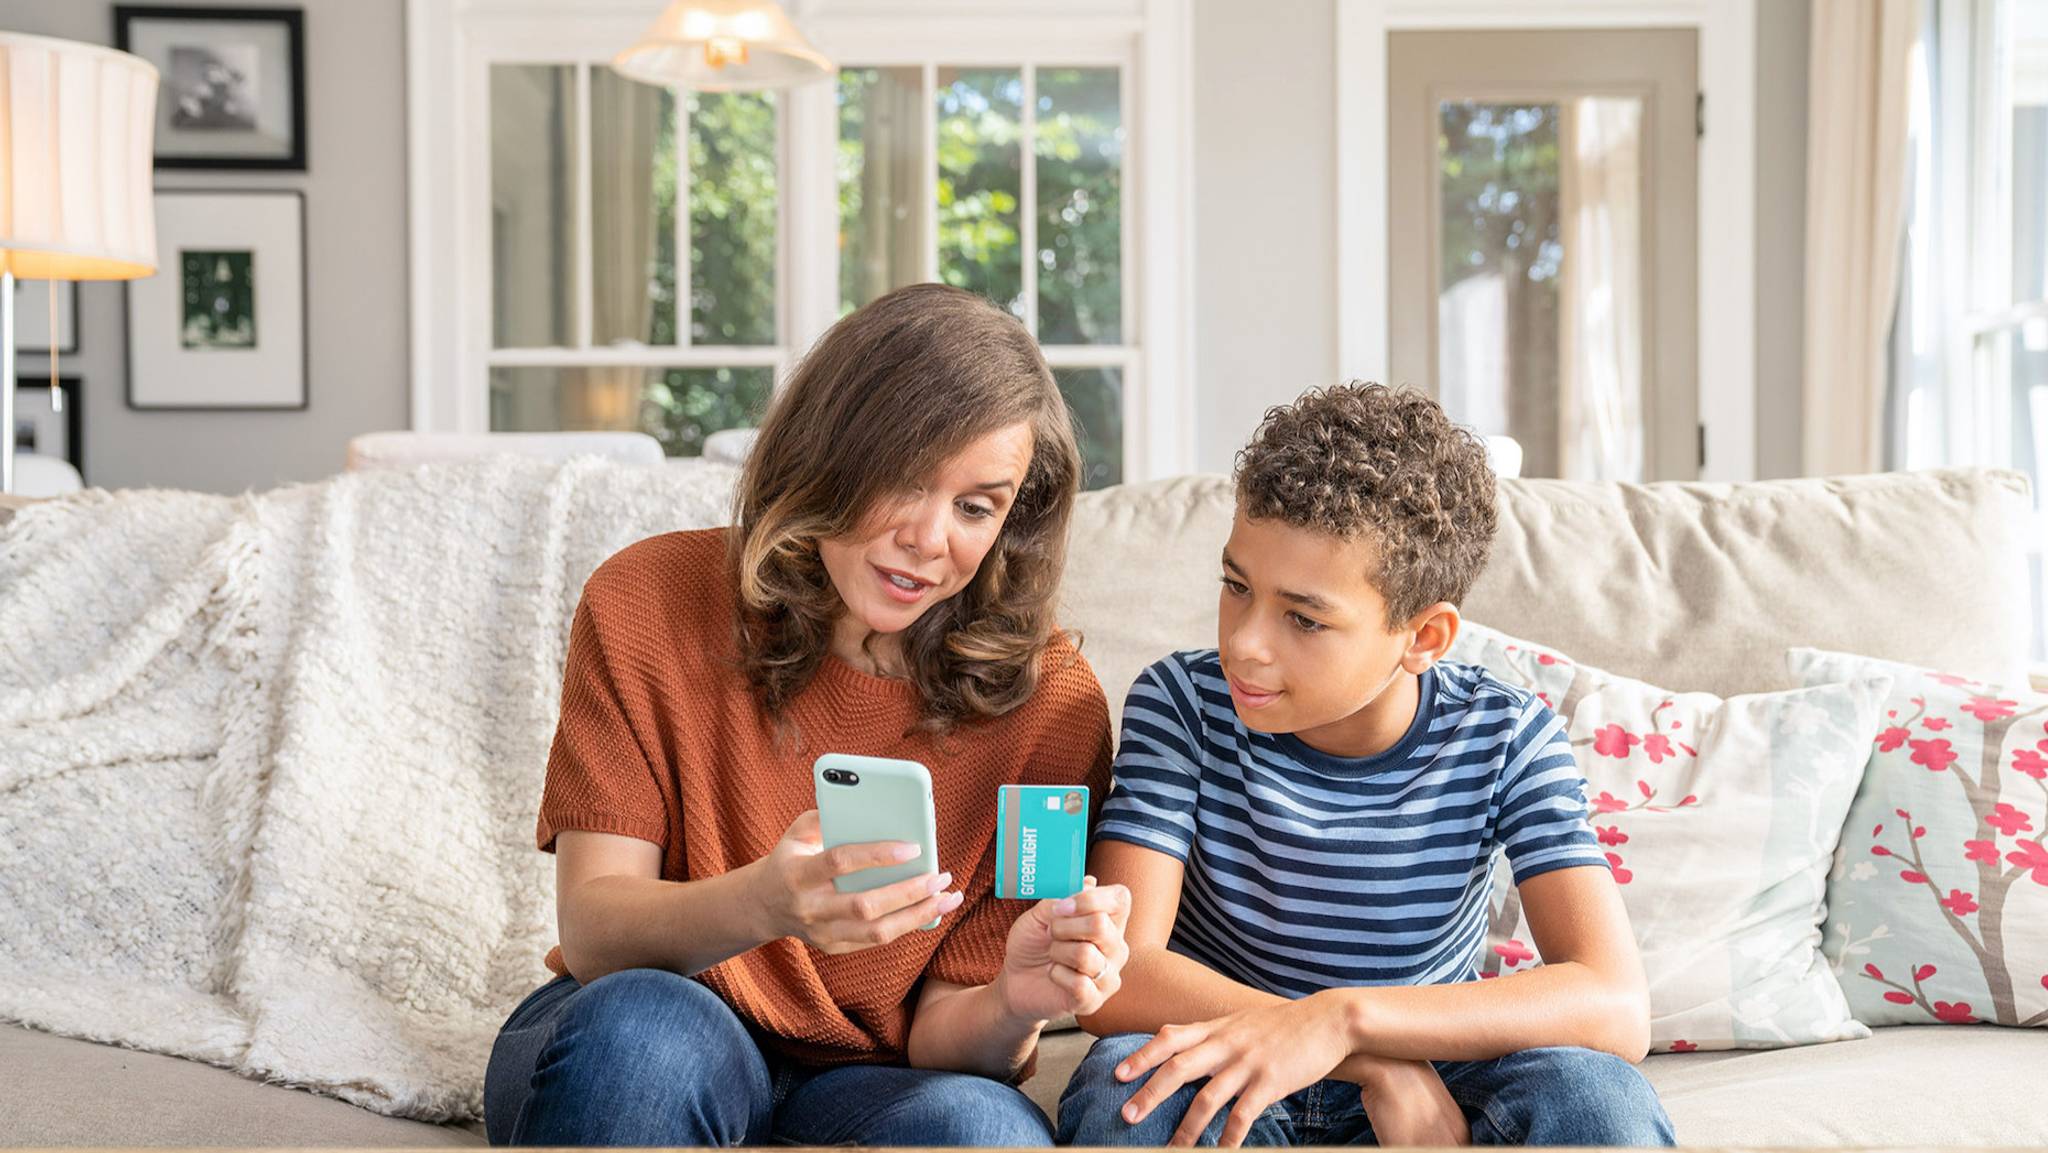 Money apps help parents teach children about money